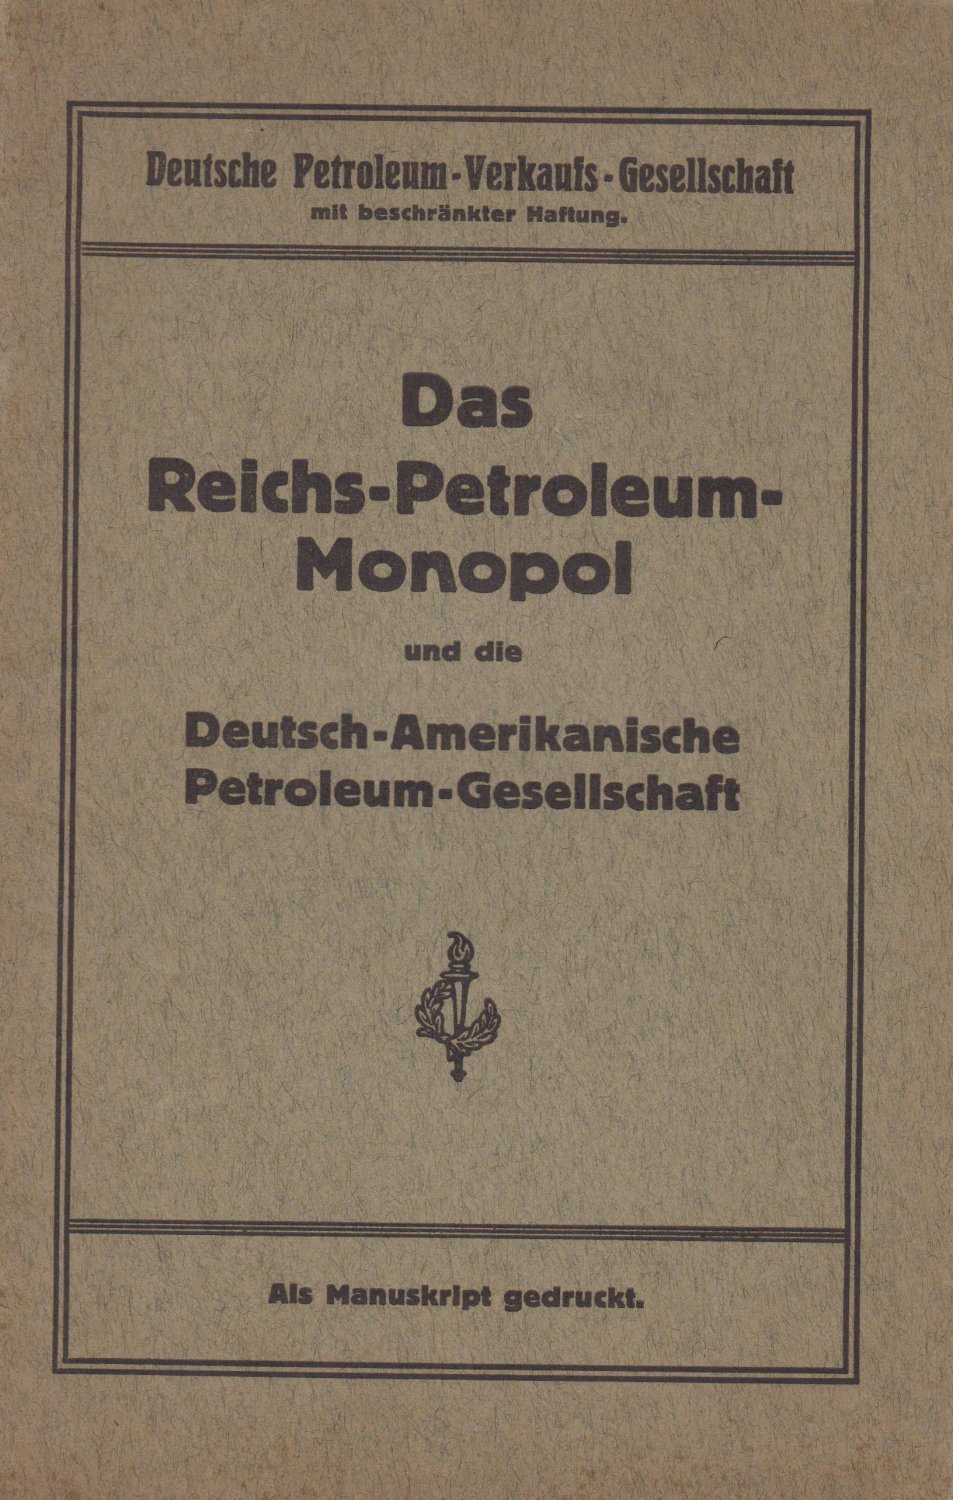 DEUTSCHE PETROLEUM-VERKAUFS-GESELLSCHAFT:  Das Reichs-Petroleum-Monopol und die Deutsch-Amerikanische Petroleum-Gesellschaft. 